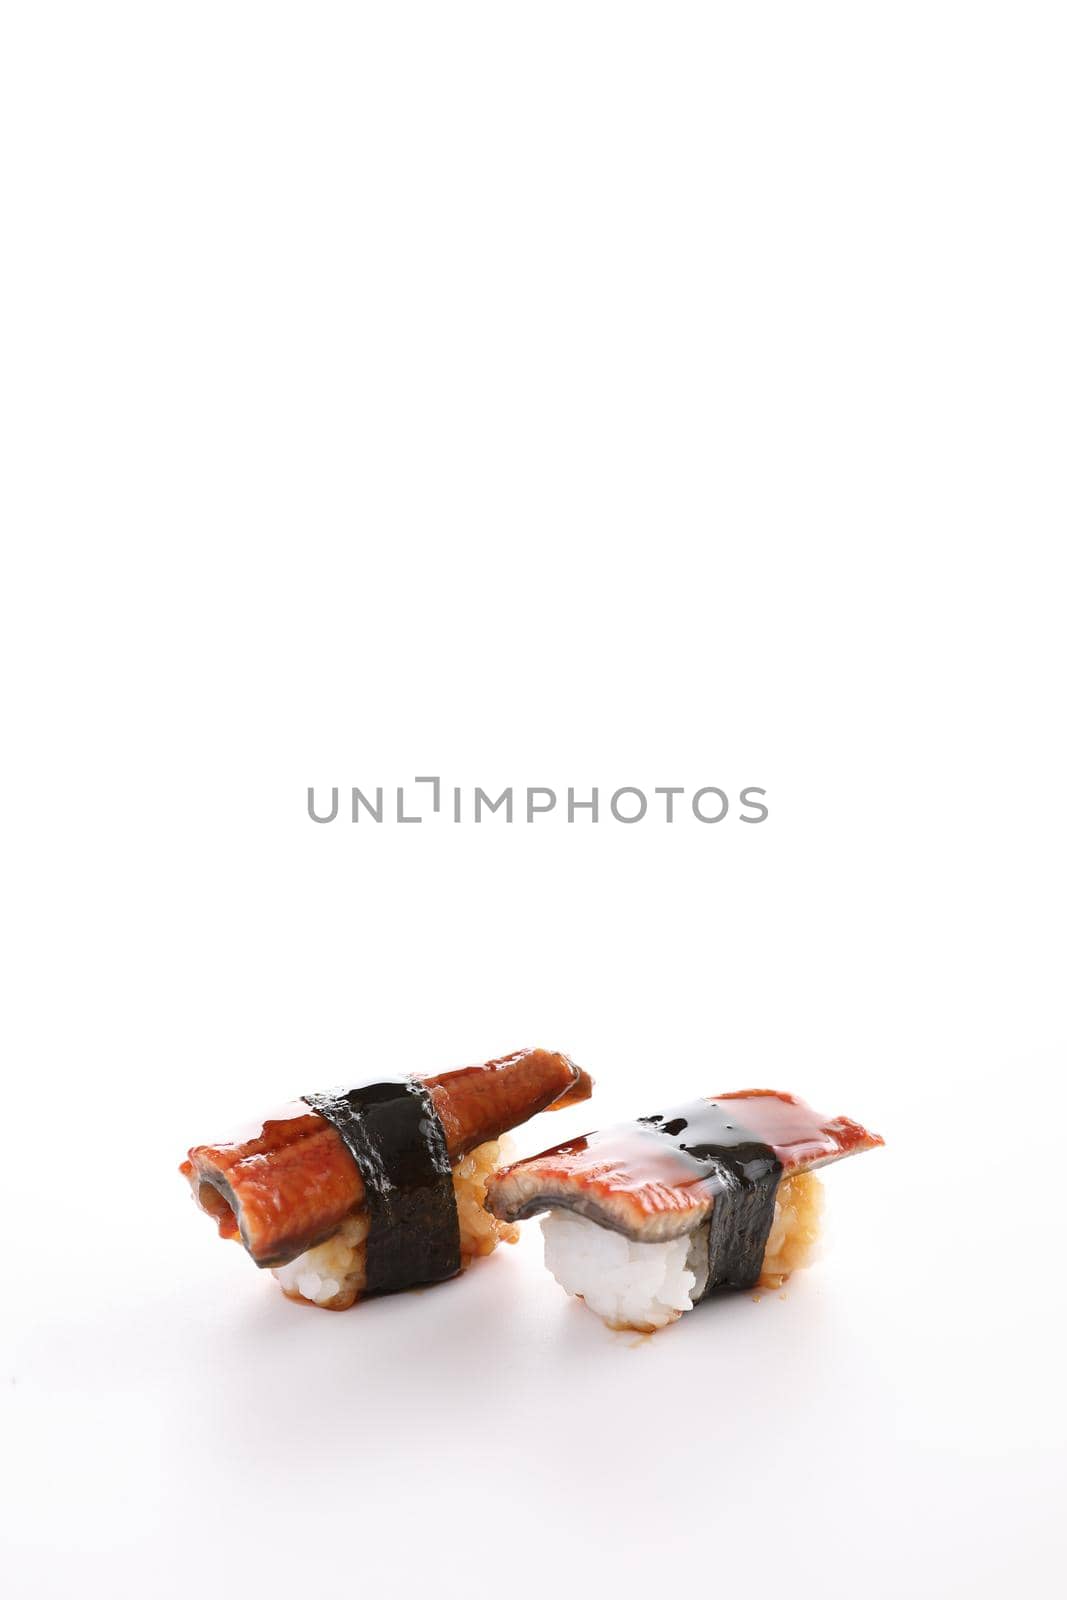 eel sushi eel nigiri sushi japanese food isolated in white background by piyato